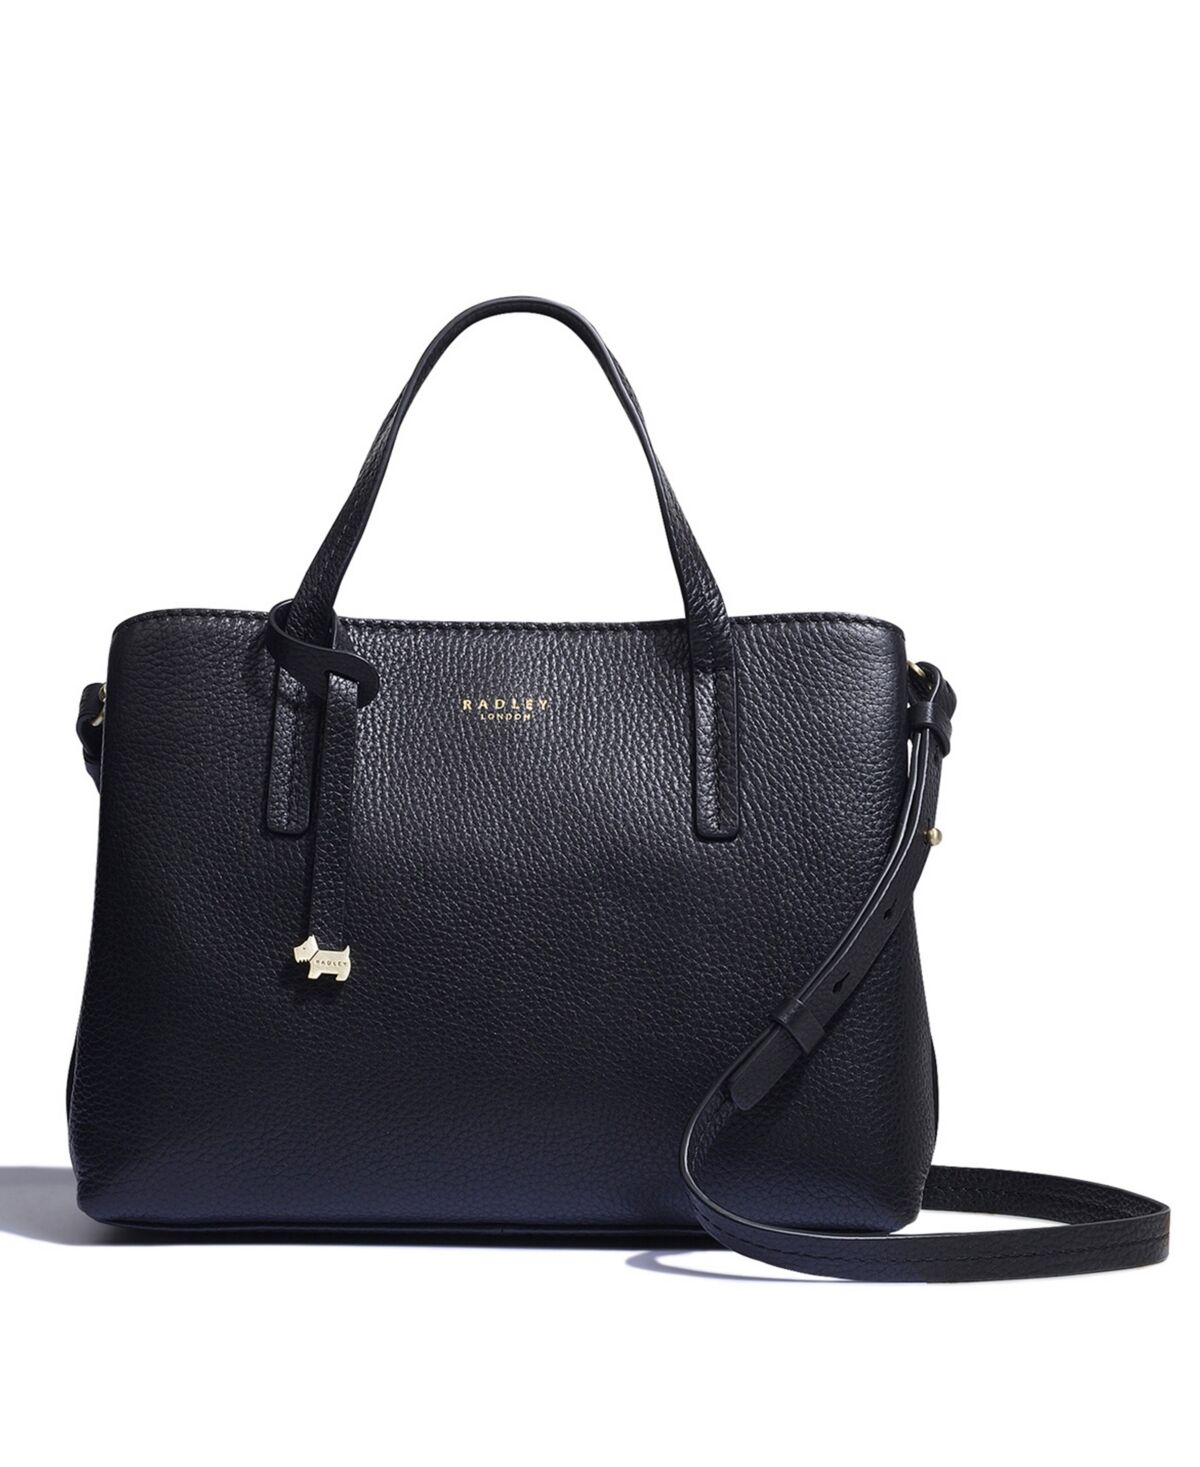 Radley London Women's Medium Open Top Multiway Satchel Handbag - Black